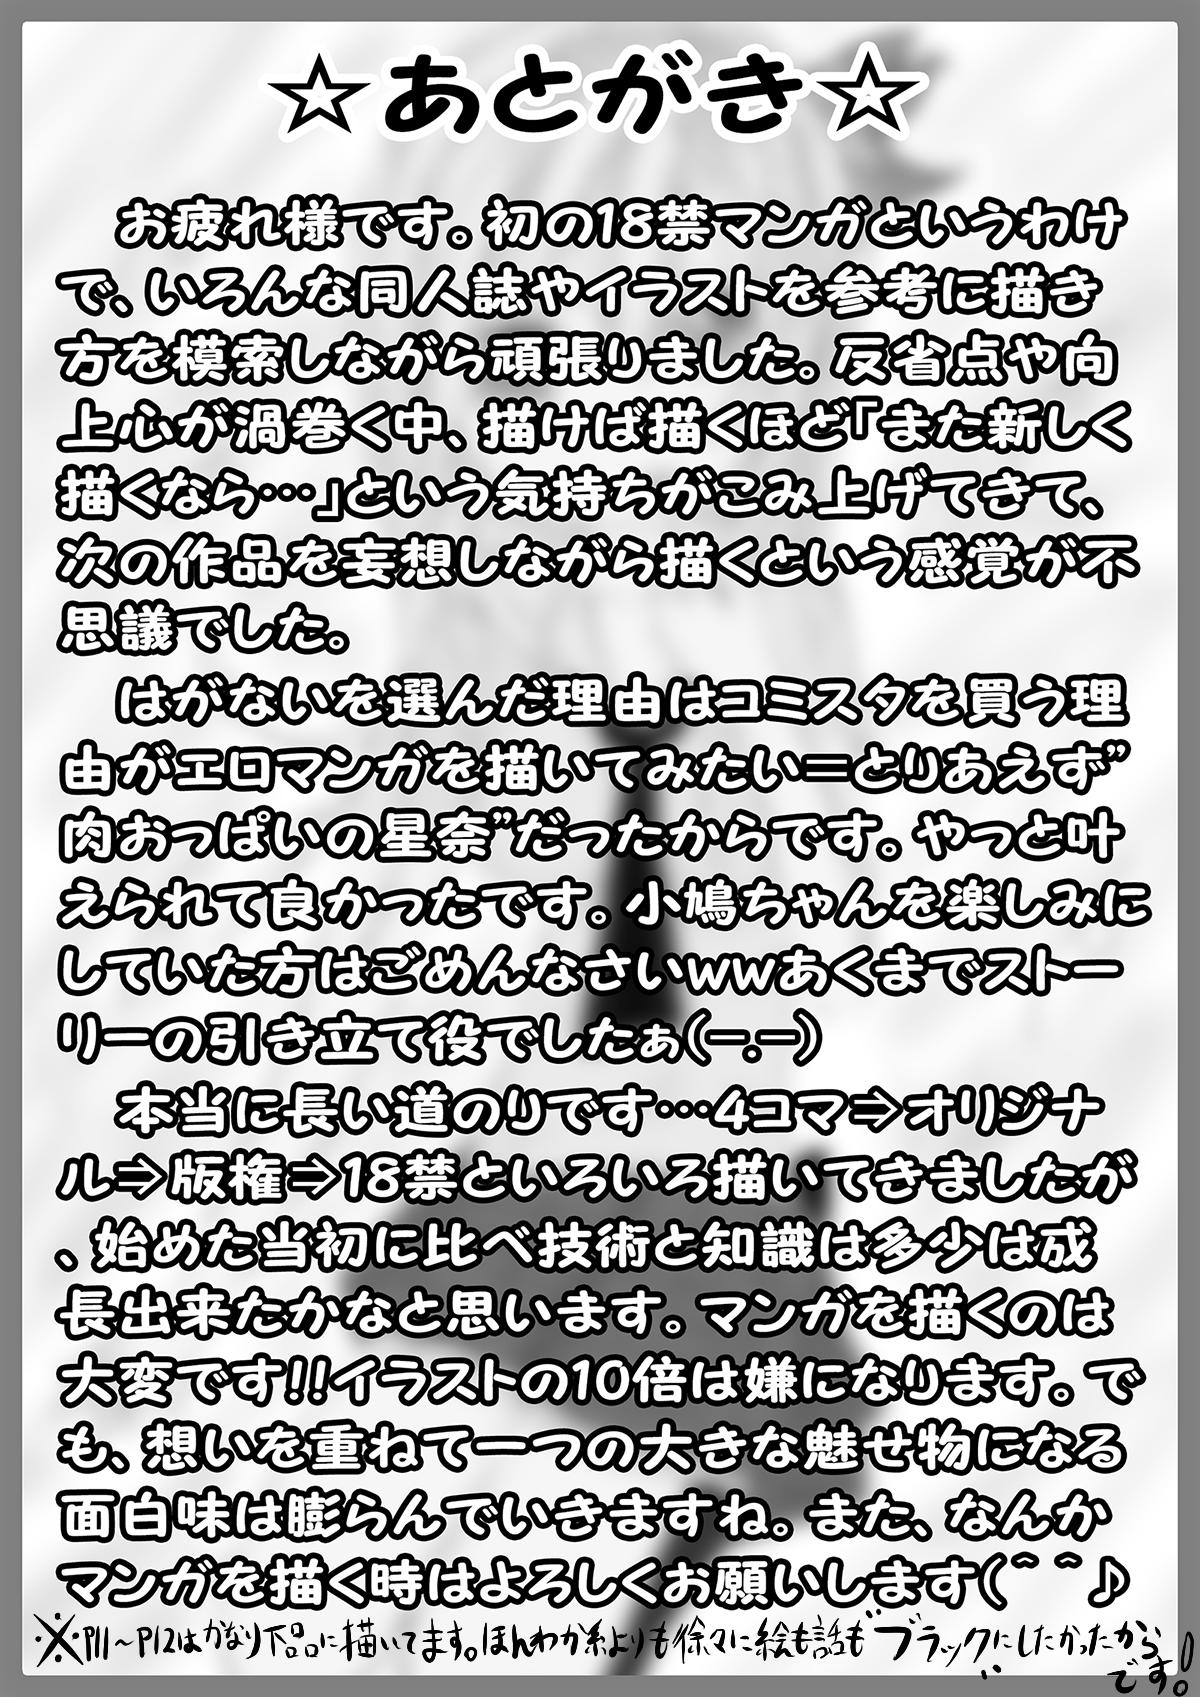 Toilet 僕は××友達が少ない… - Boku wa tomodachi ga sukunai Nuru - Page 14